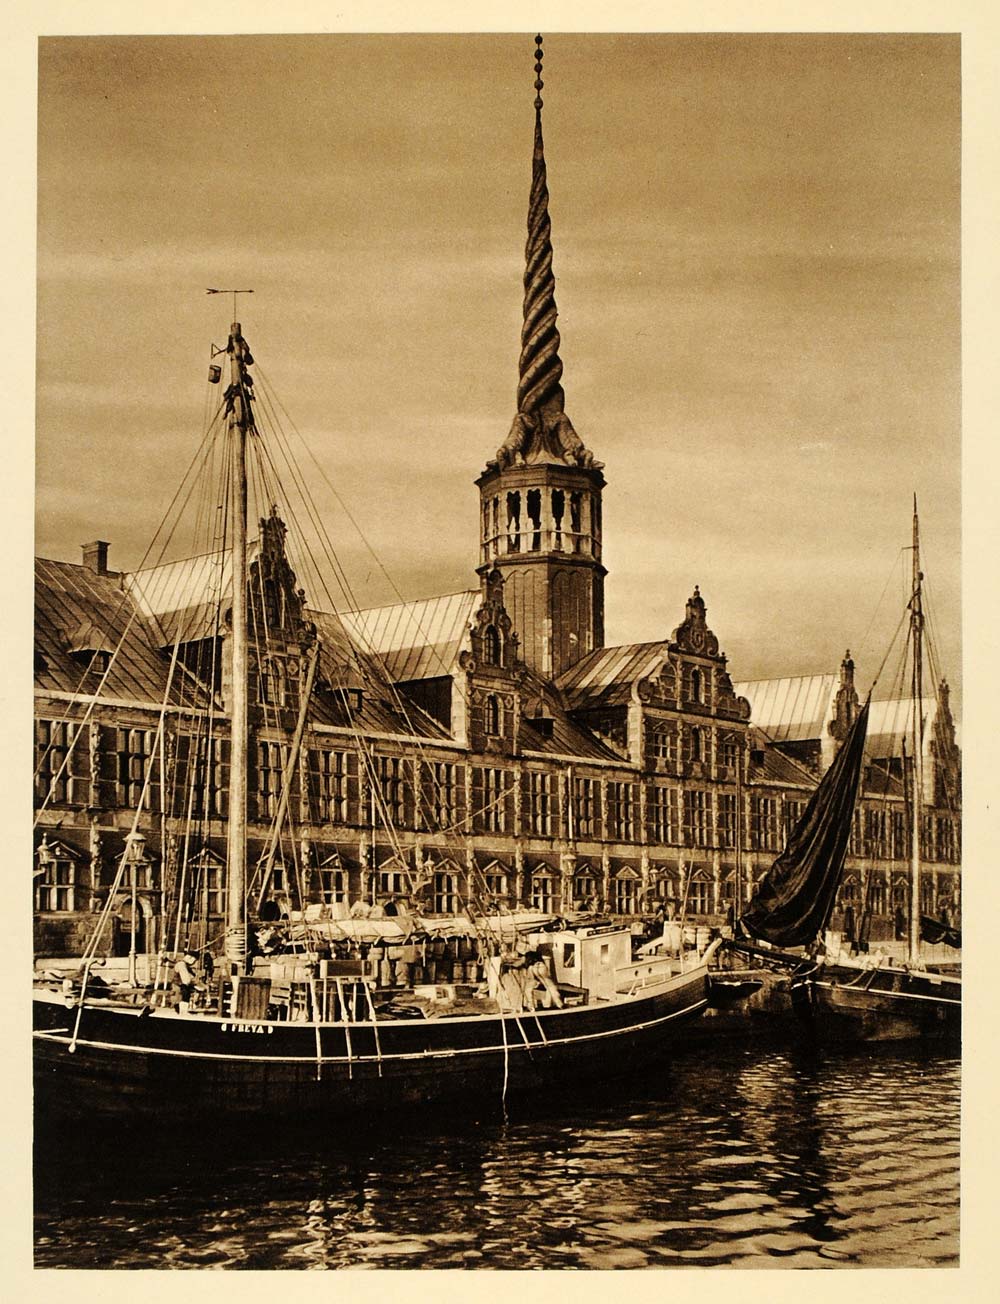 1932 Copenhagen City Borsen Stock Exchange Slotsholmen - ORIGINAL SC3